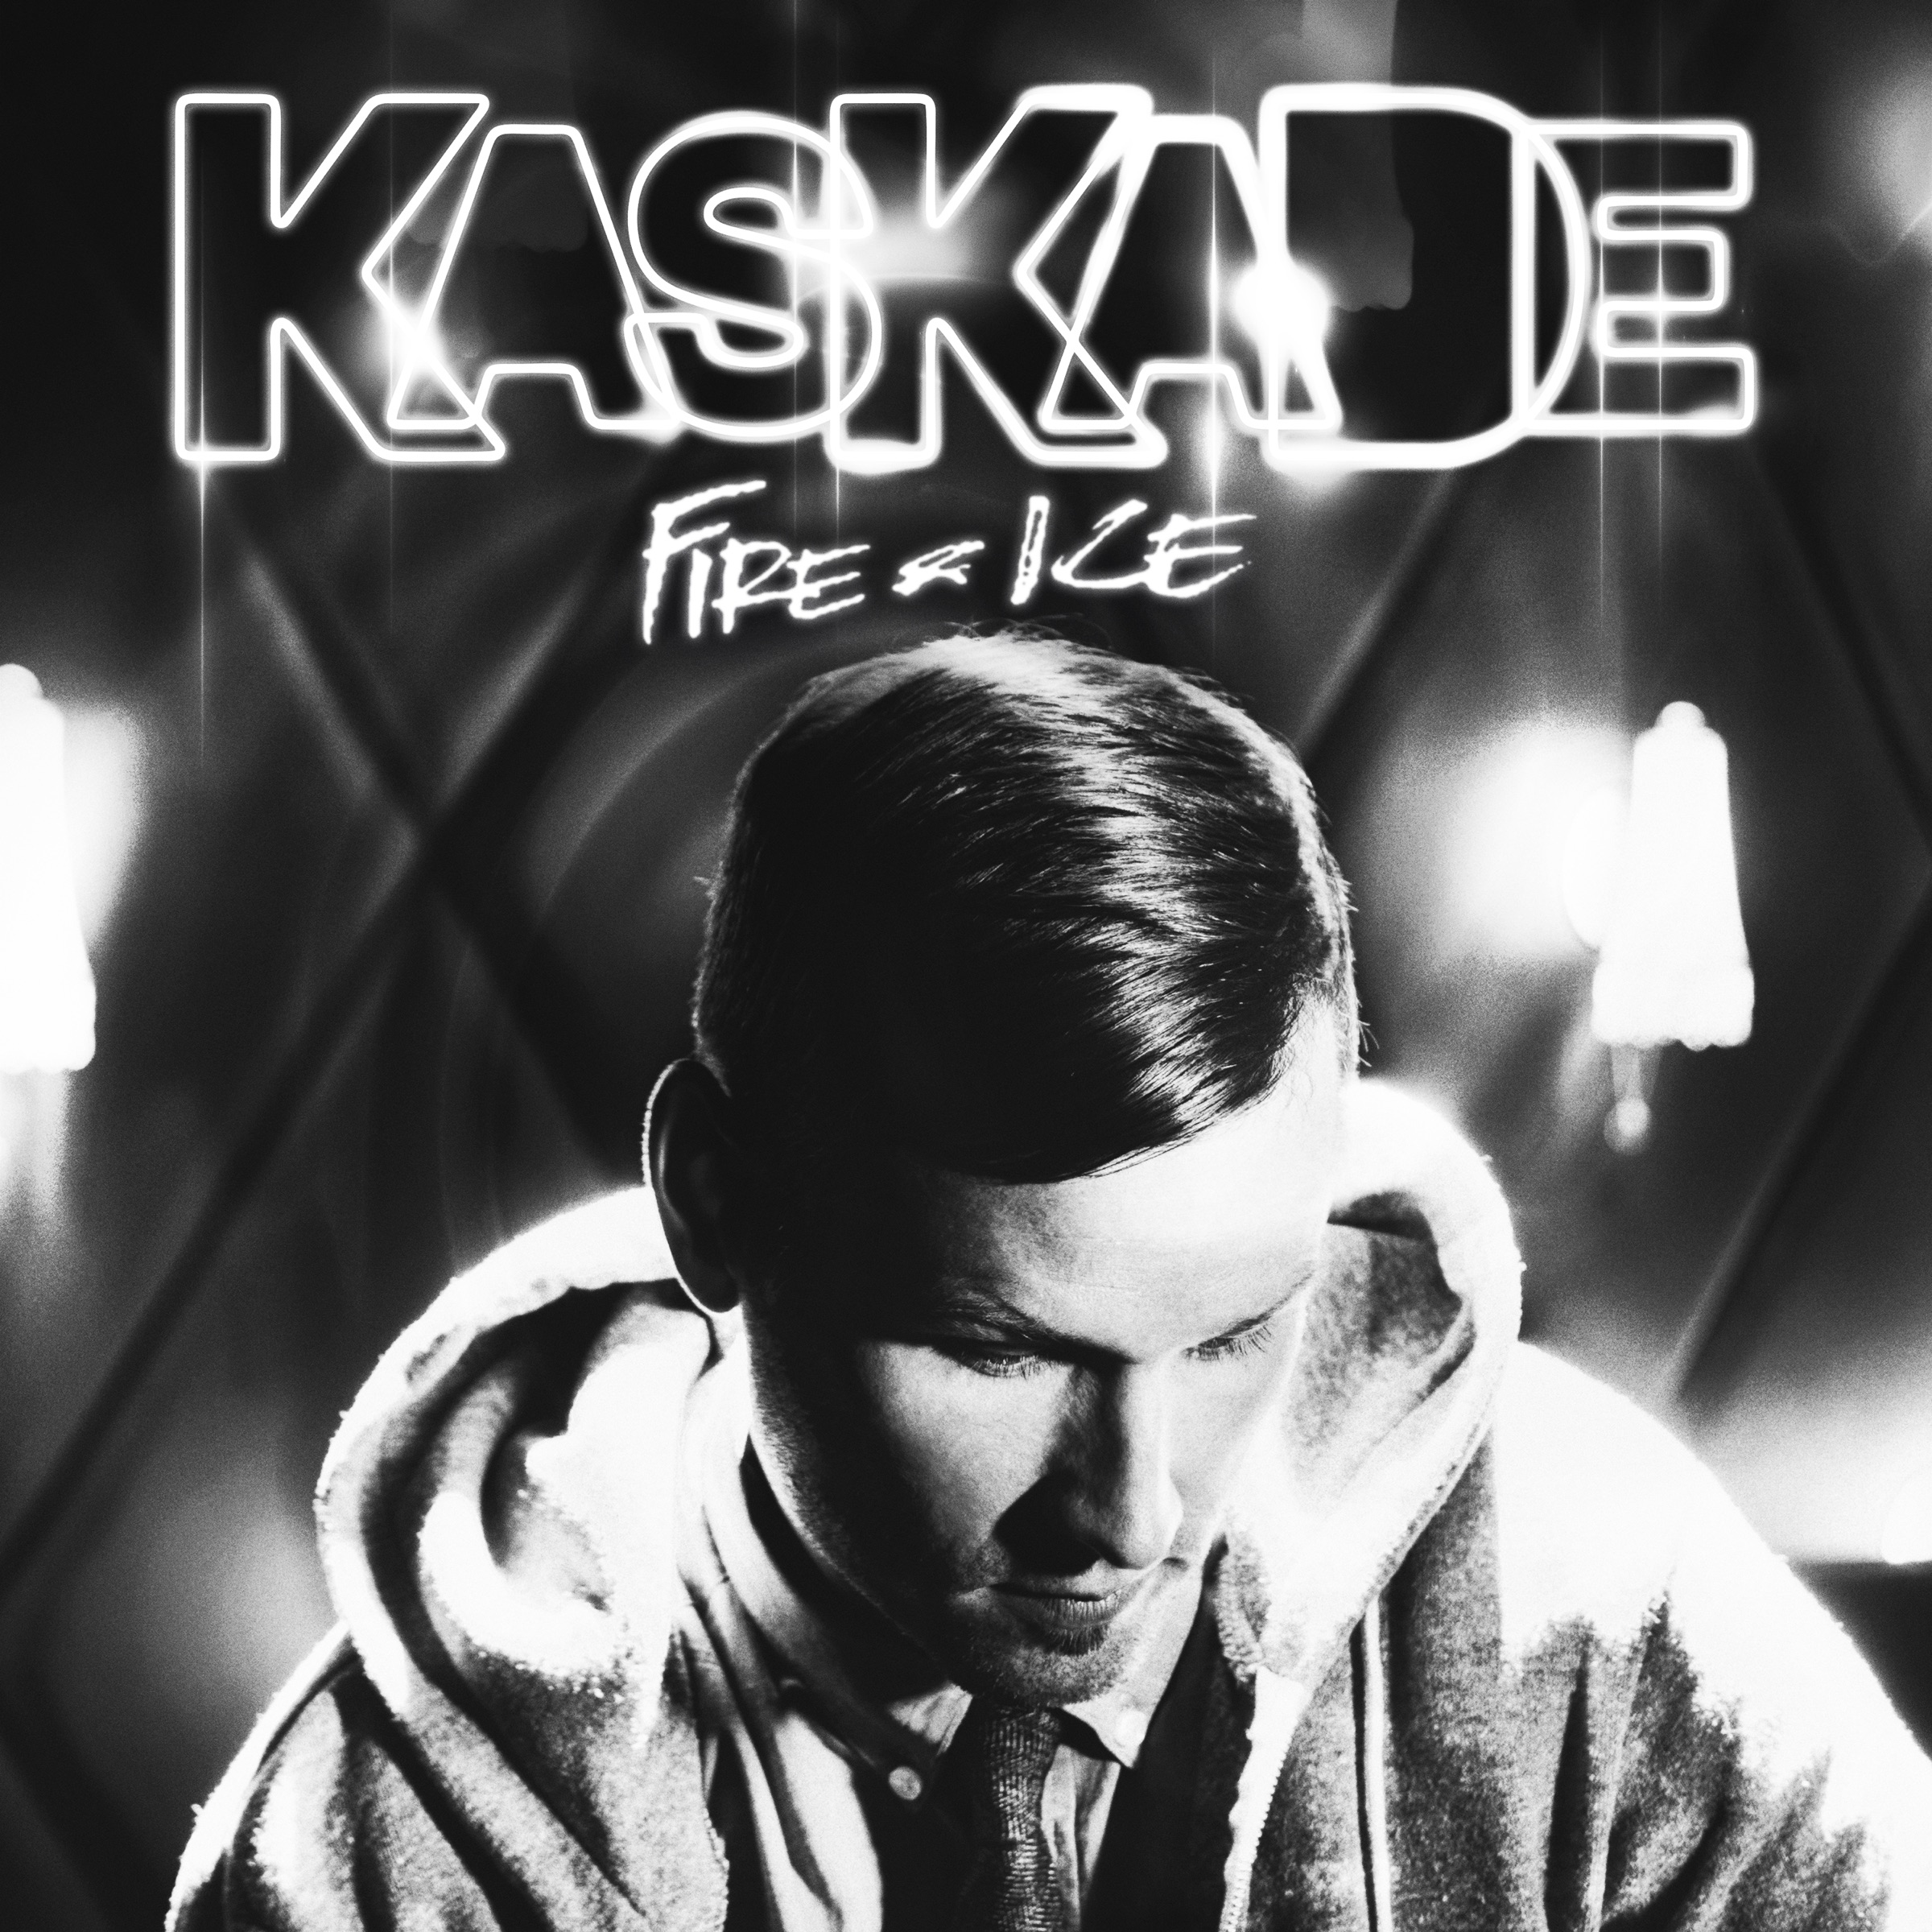 Kaskade Fire &amp; Ice v3 cover artwork